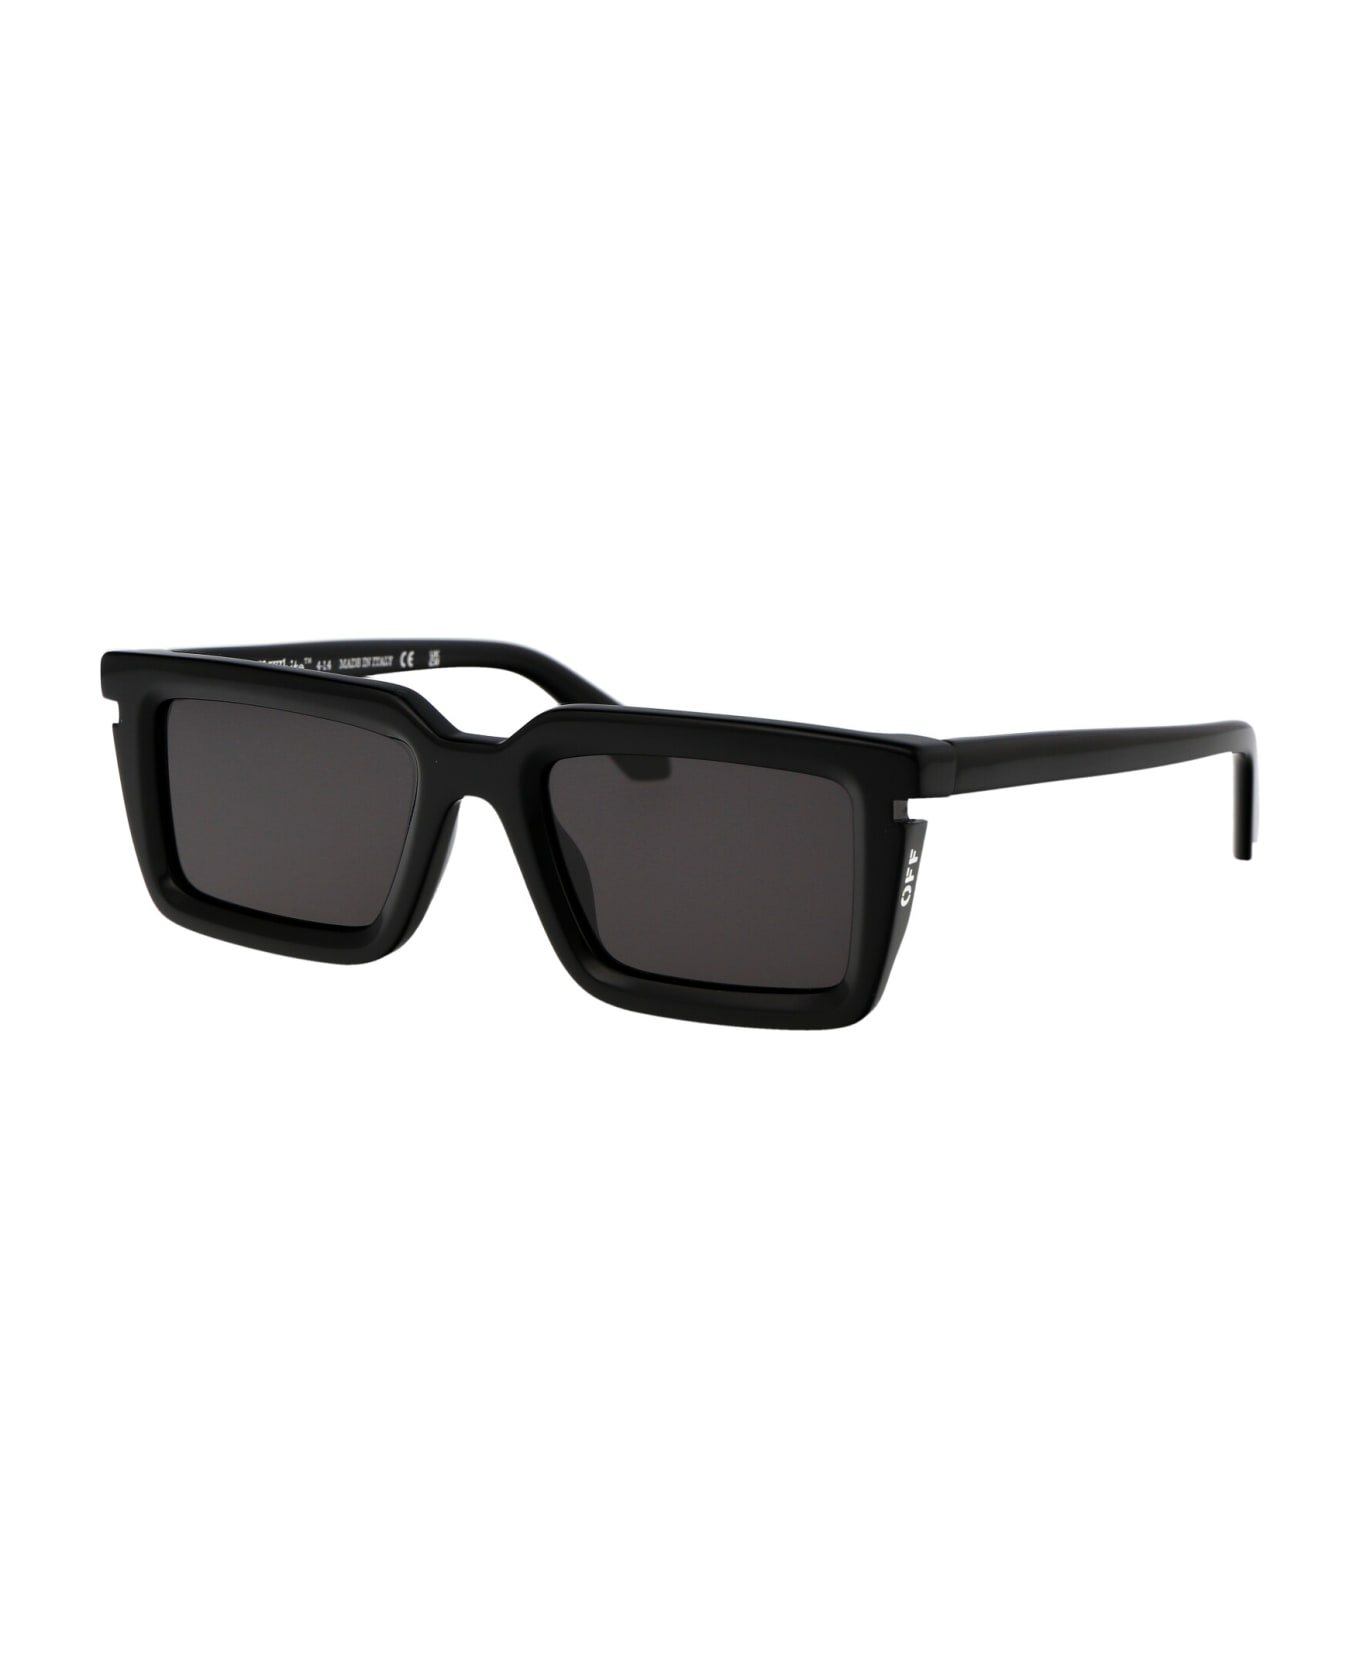 Off-White Tucson Sunglasses - 1007 BLACK